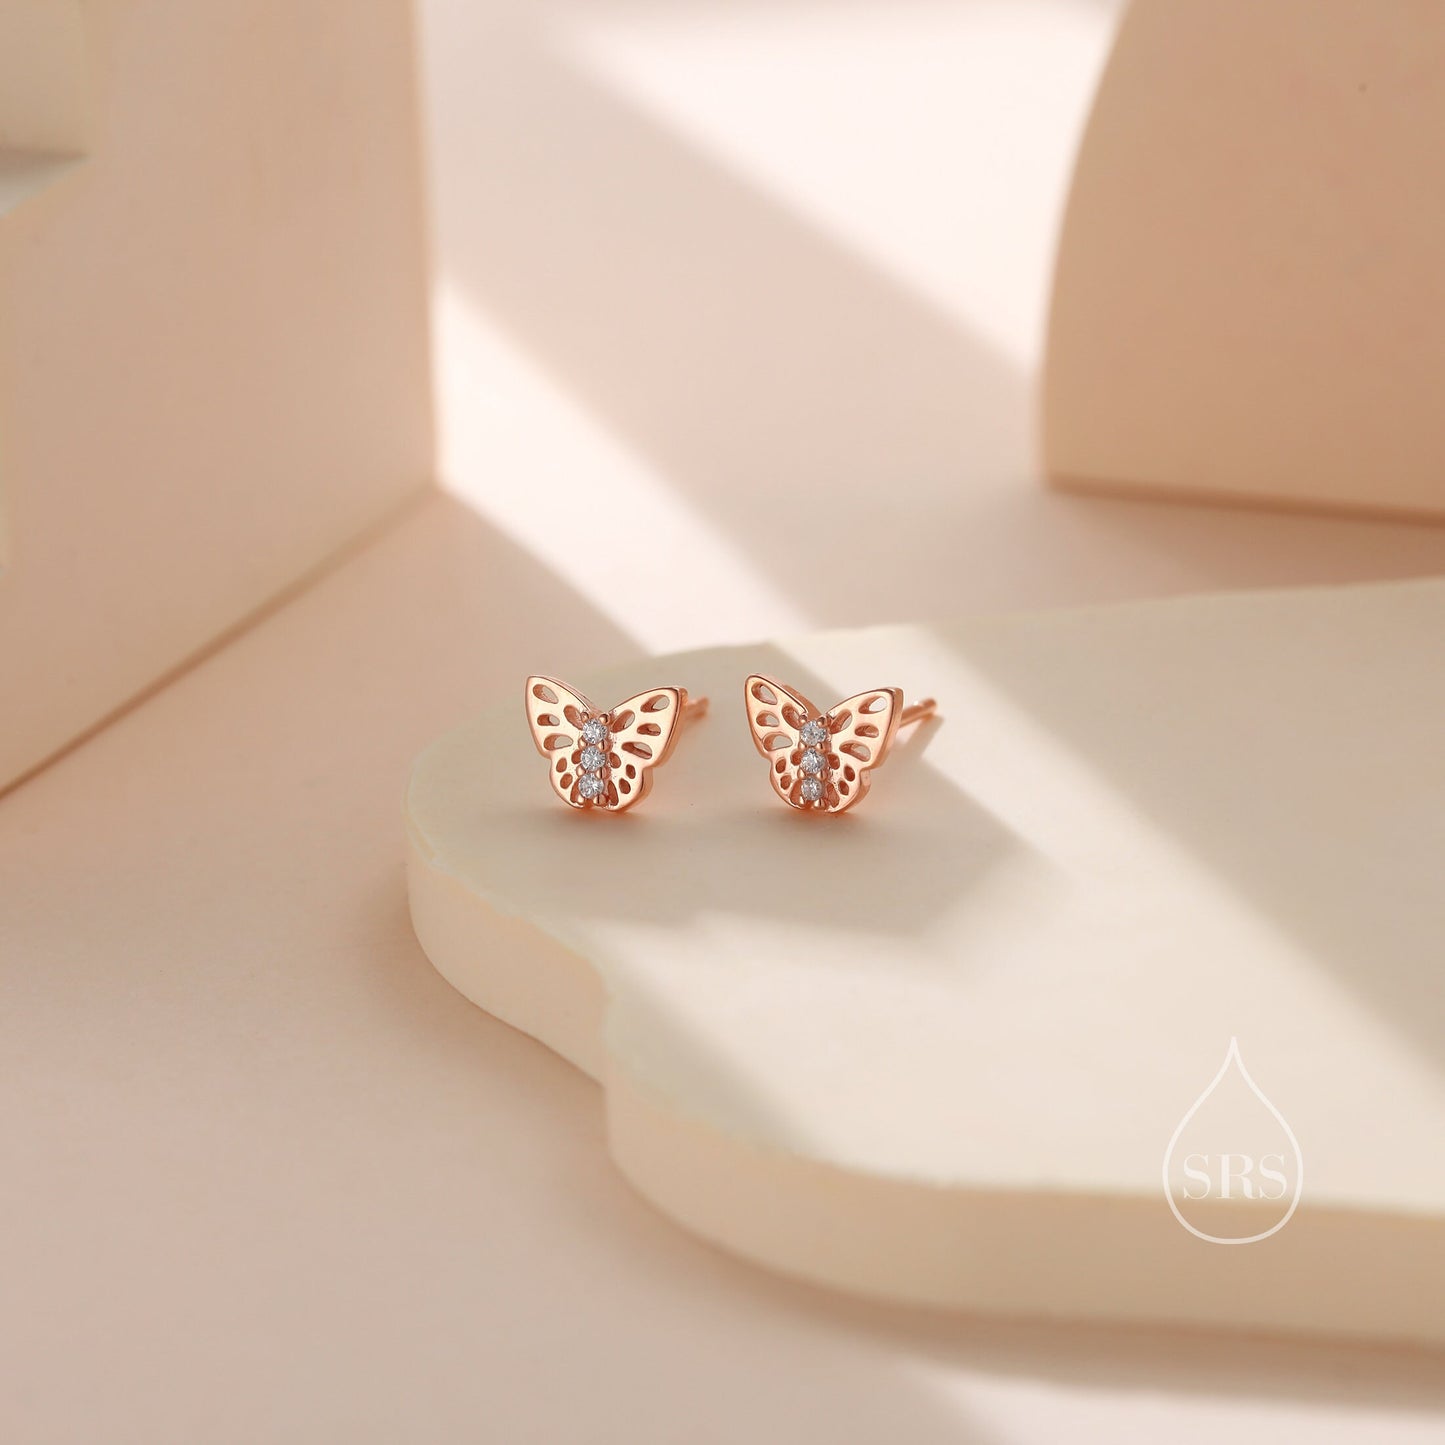 Tiny Butterfly Stud Earrings in Sterling Silver, Silver, Gold or Rose Gold, Butterfly Earrings, Animal Earrings, Small Butterfly Earrings